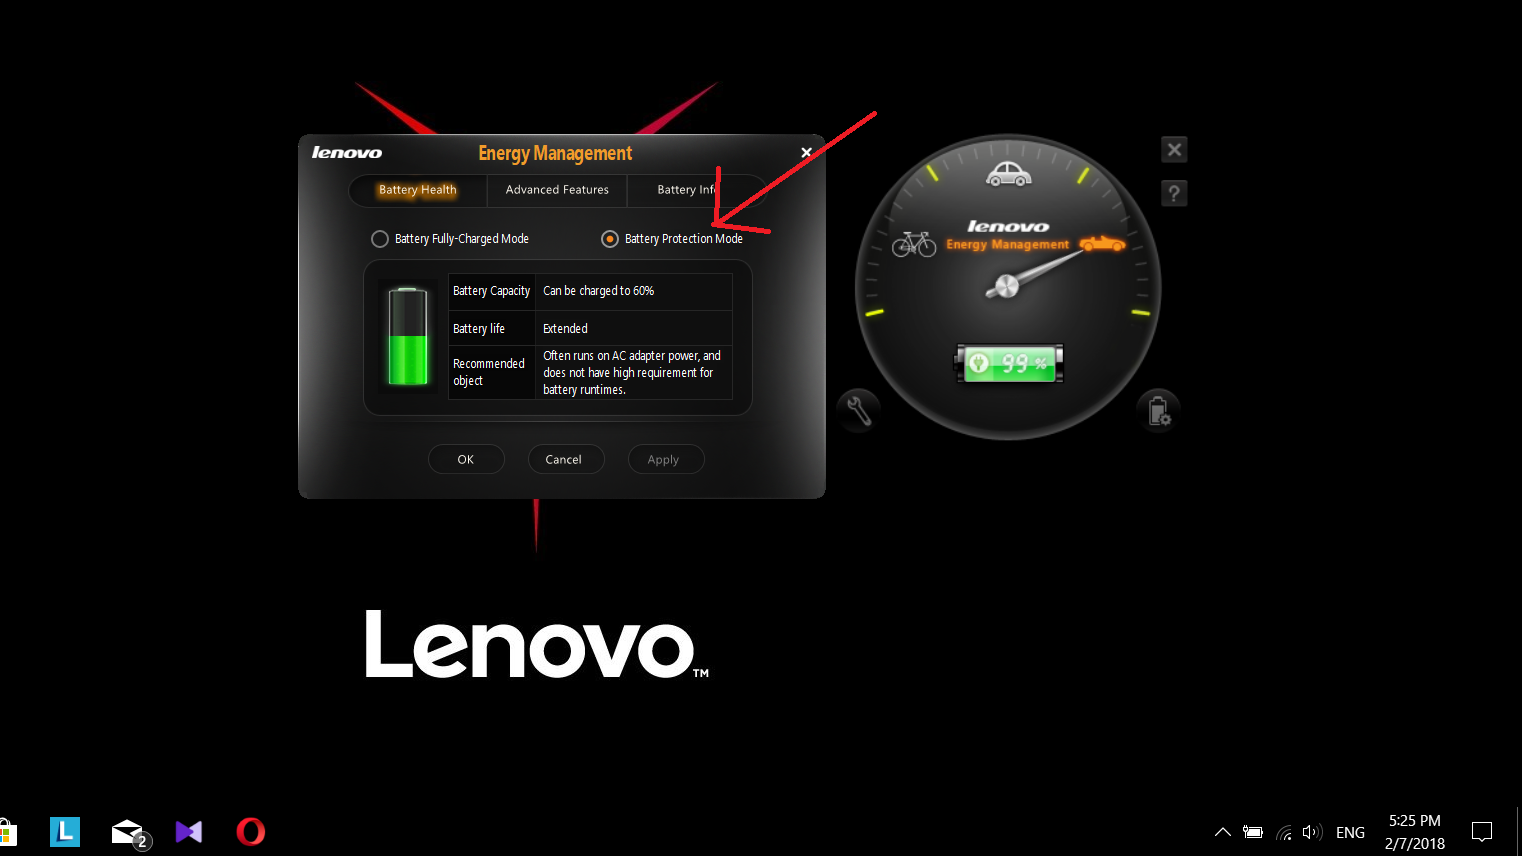 Lenovo energy manager. Lenovo Energy Management. Lenovo Energy Management 1.5.0.23. Lenovo Energy Management for Windows 10.